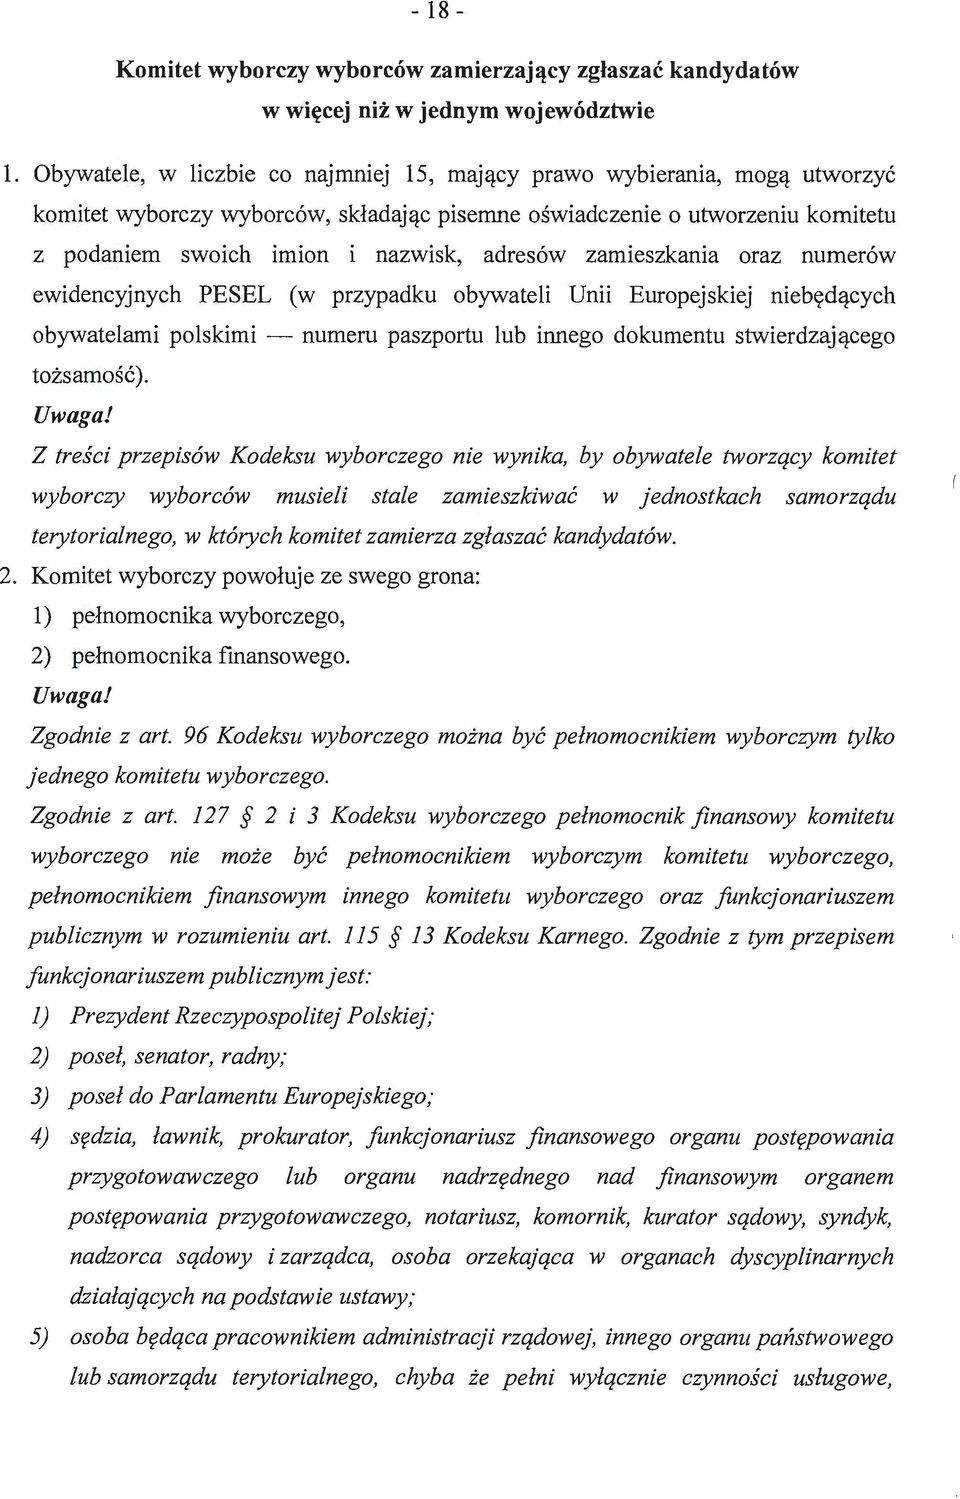 zamieszkania oraz numerów ewidencyjnych PESEL w przypadku obywateli Unii Europejskiej niebędących obywatelami polskimi - numeru paszportu lub innego dokumentu stwierdzającego tożsamość).